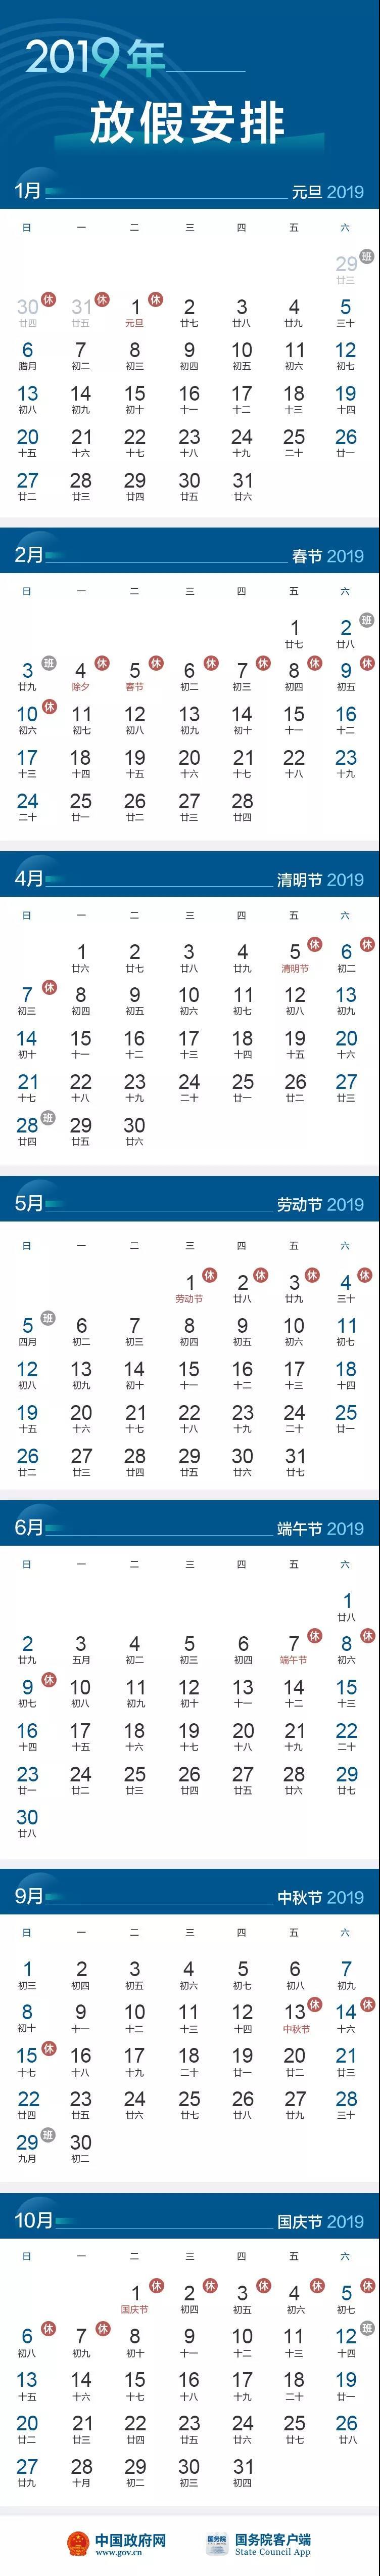 国务院办公厅关于调整2019年劳动节假期安排的通知(图1)